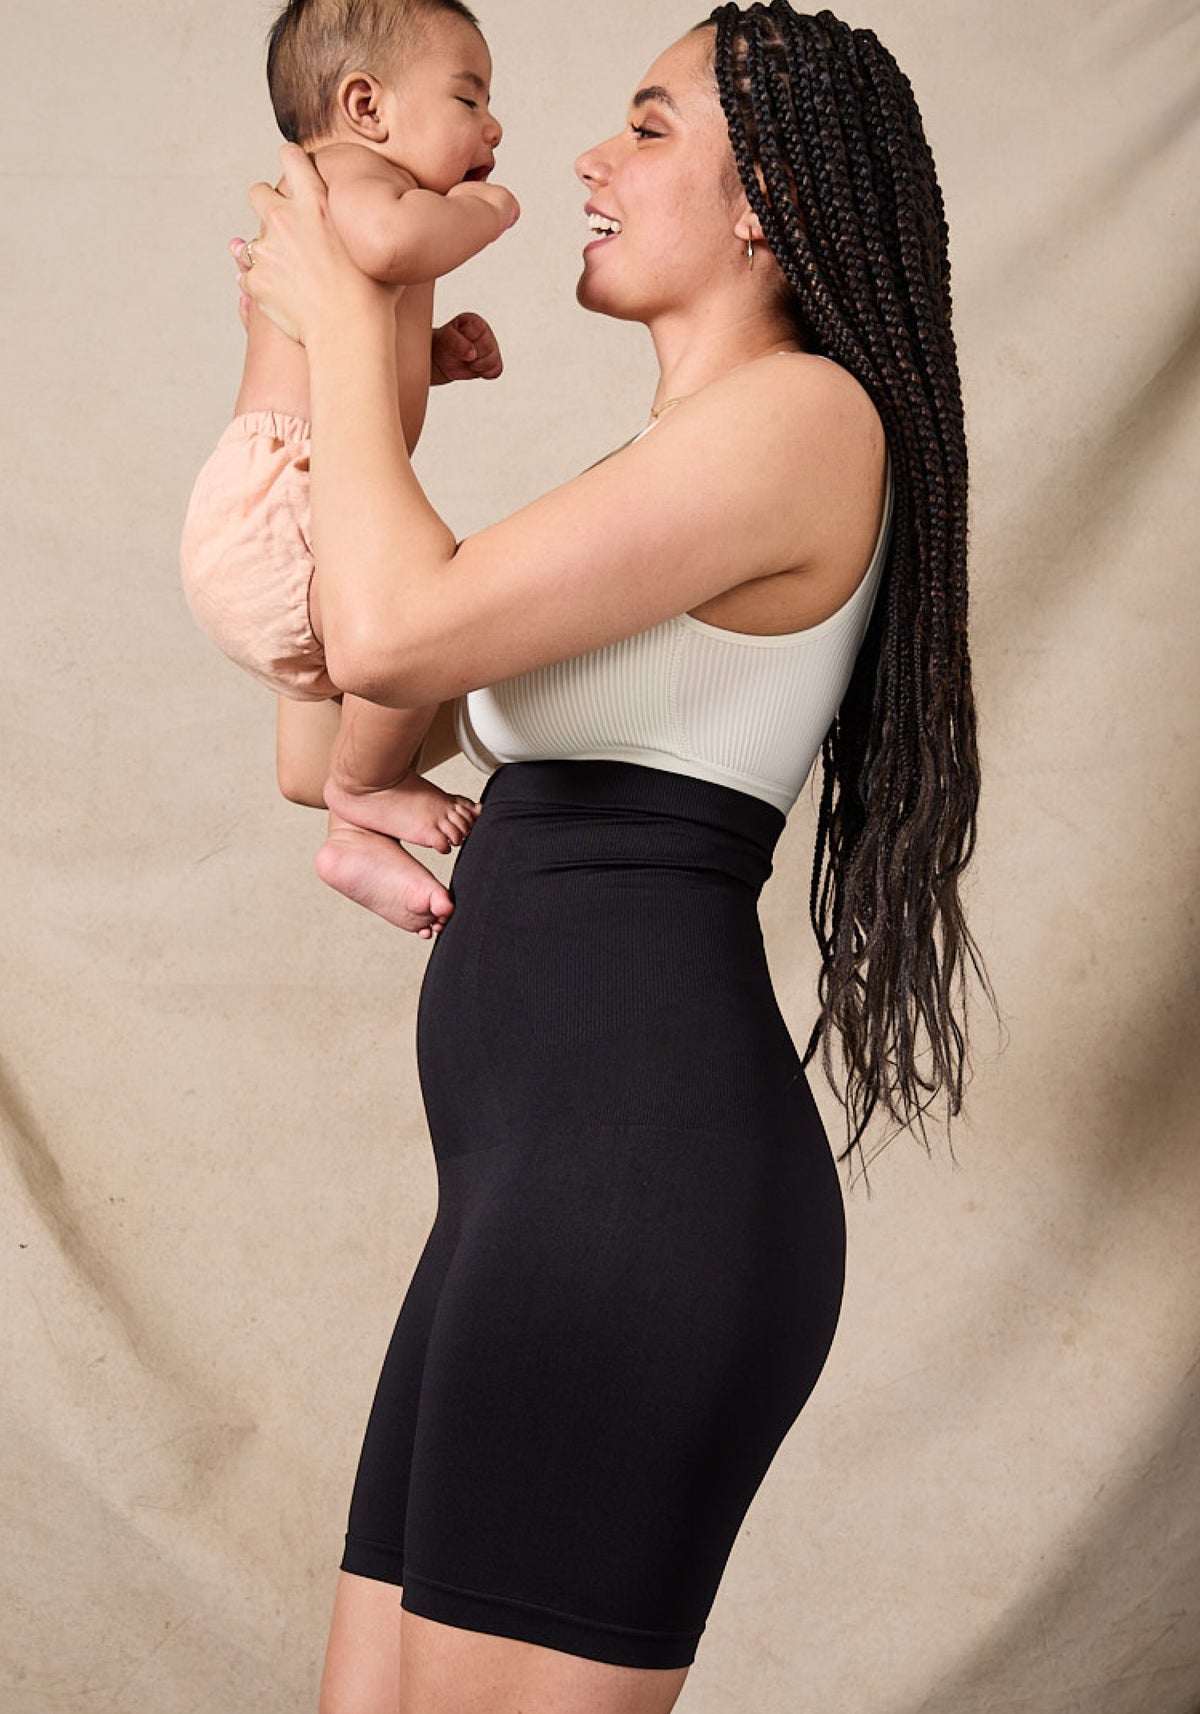 Postpartum Belly Support Girlshort & Ribbed Bralette Bundle